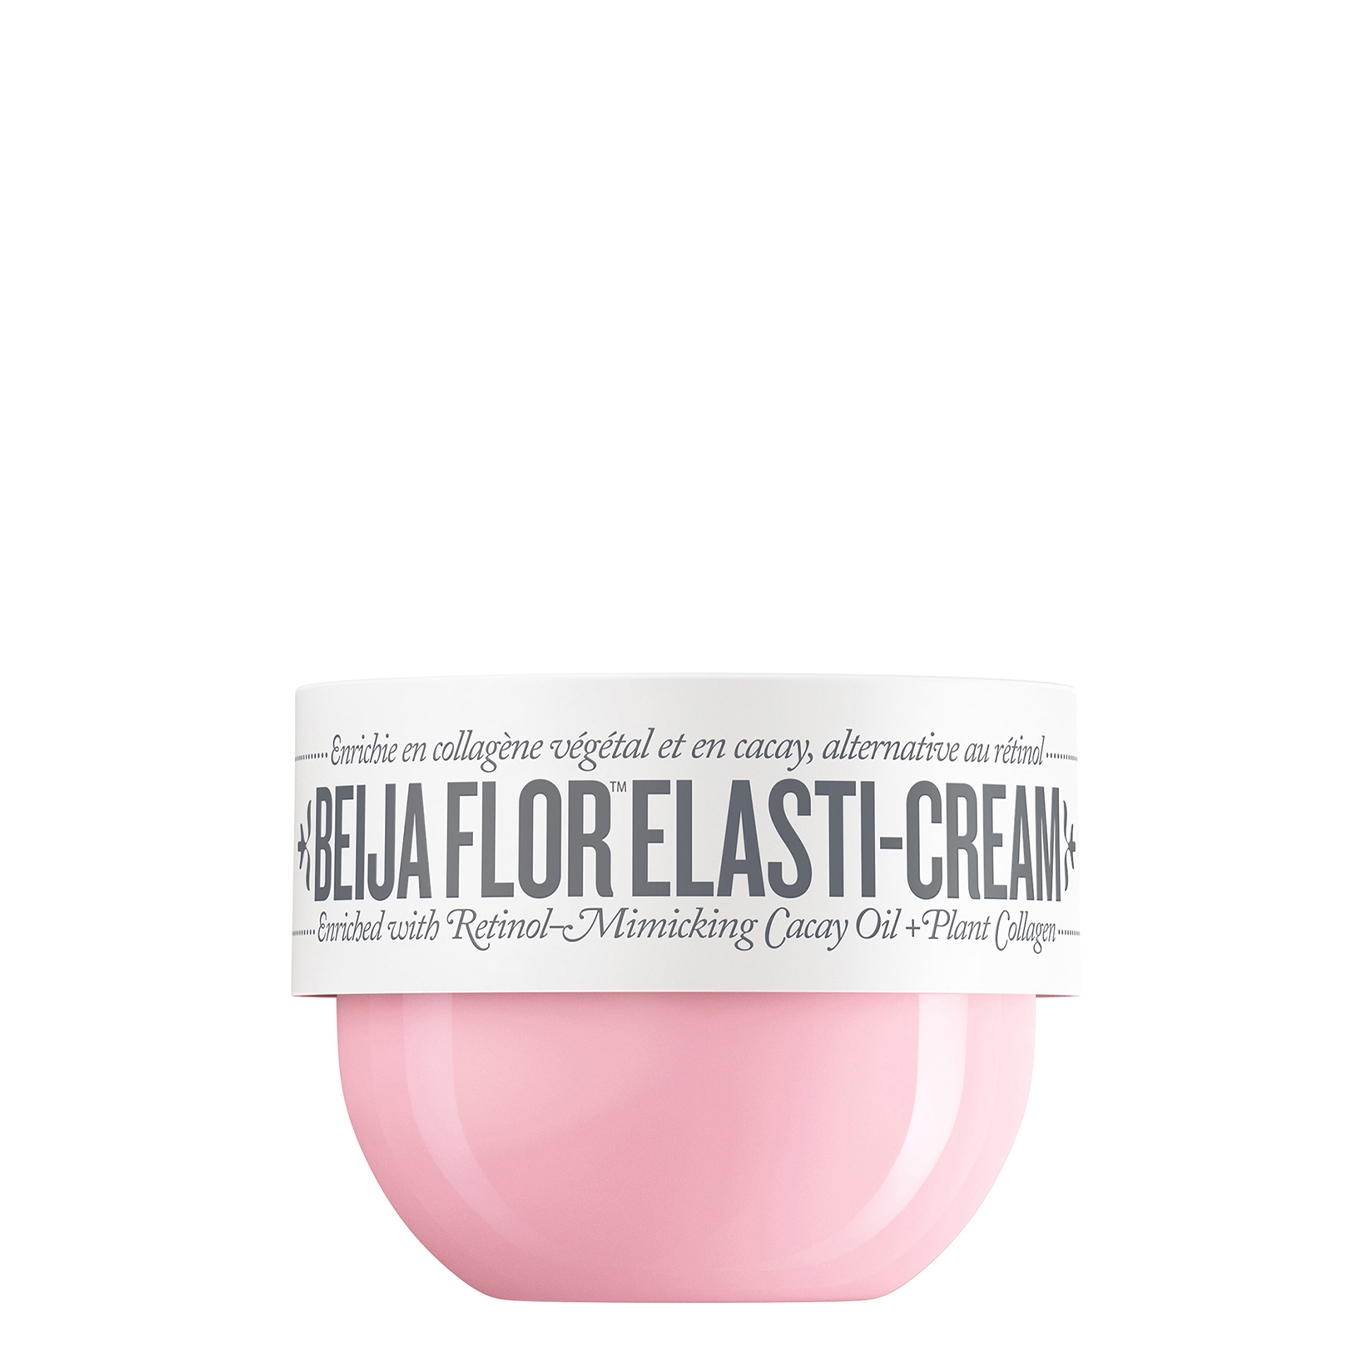 Beija Floelasti-Cream 75ml, Moisturiser, Velvet